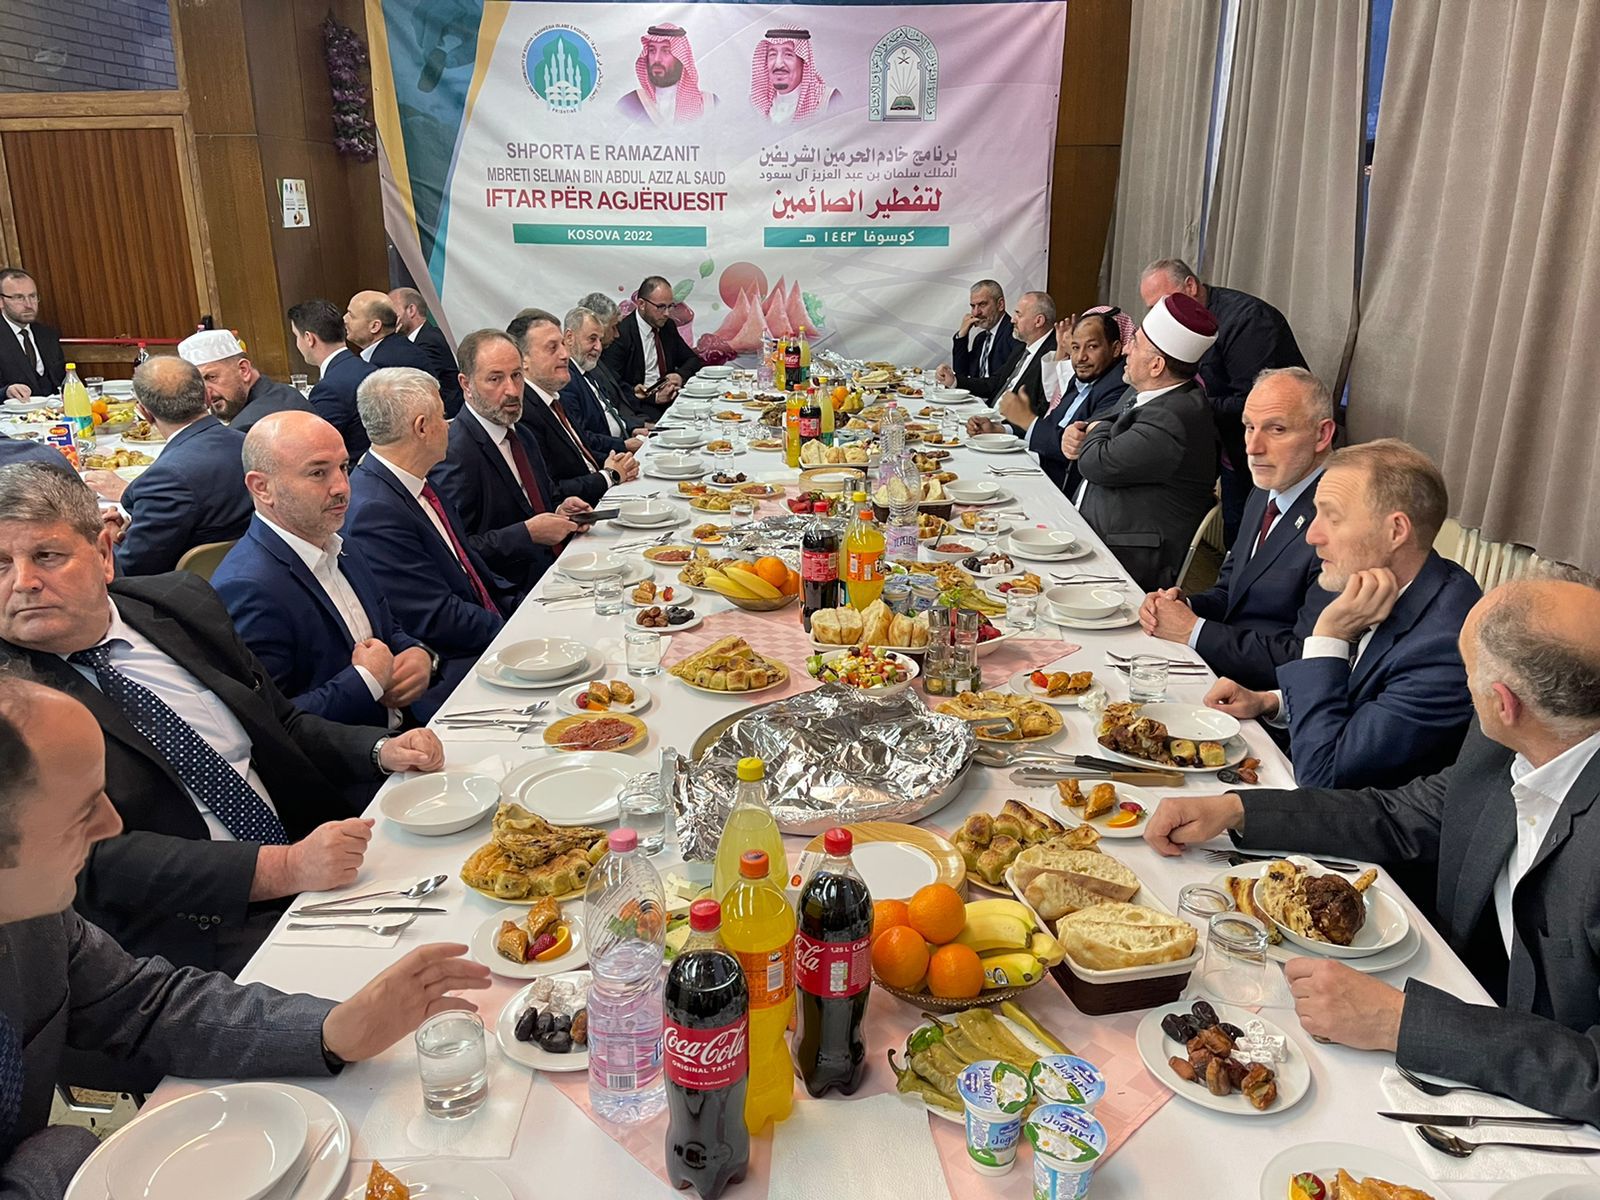 مأدبة إفطار بحضور 100 شخصية إسلامية على رأسهم المفتي ورئيس المشيخة في كوسوفا